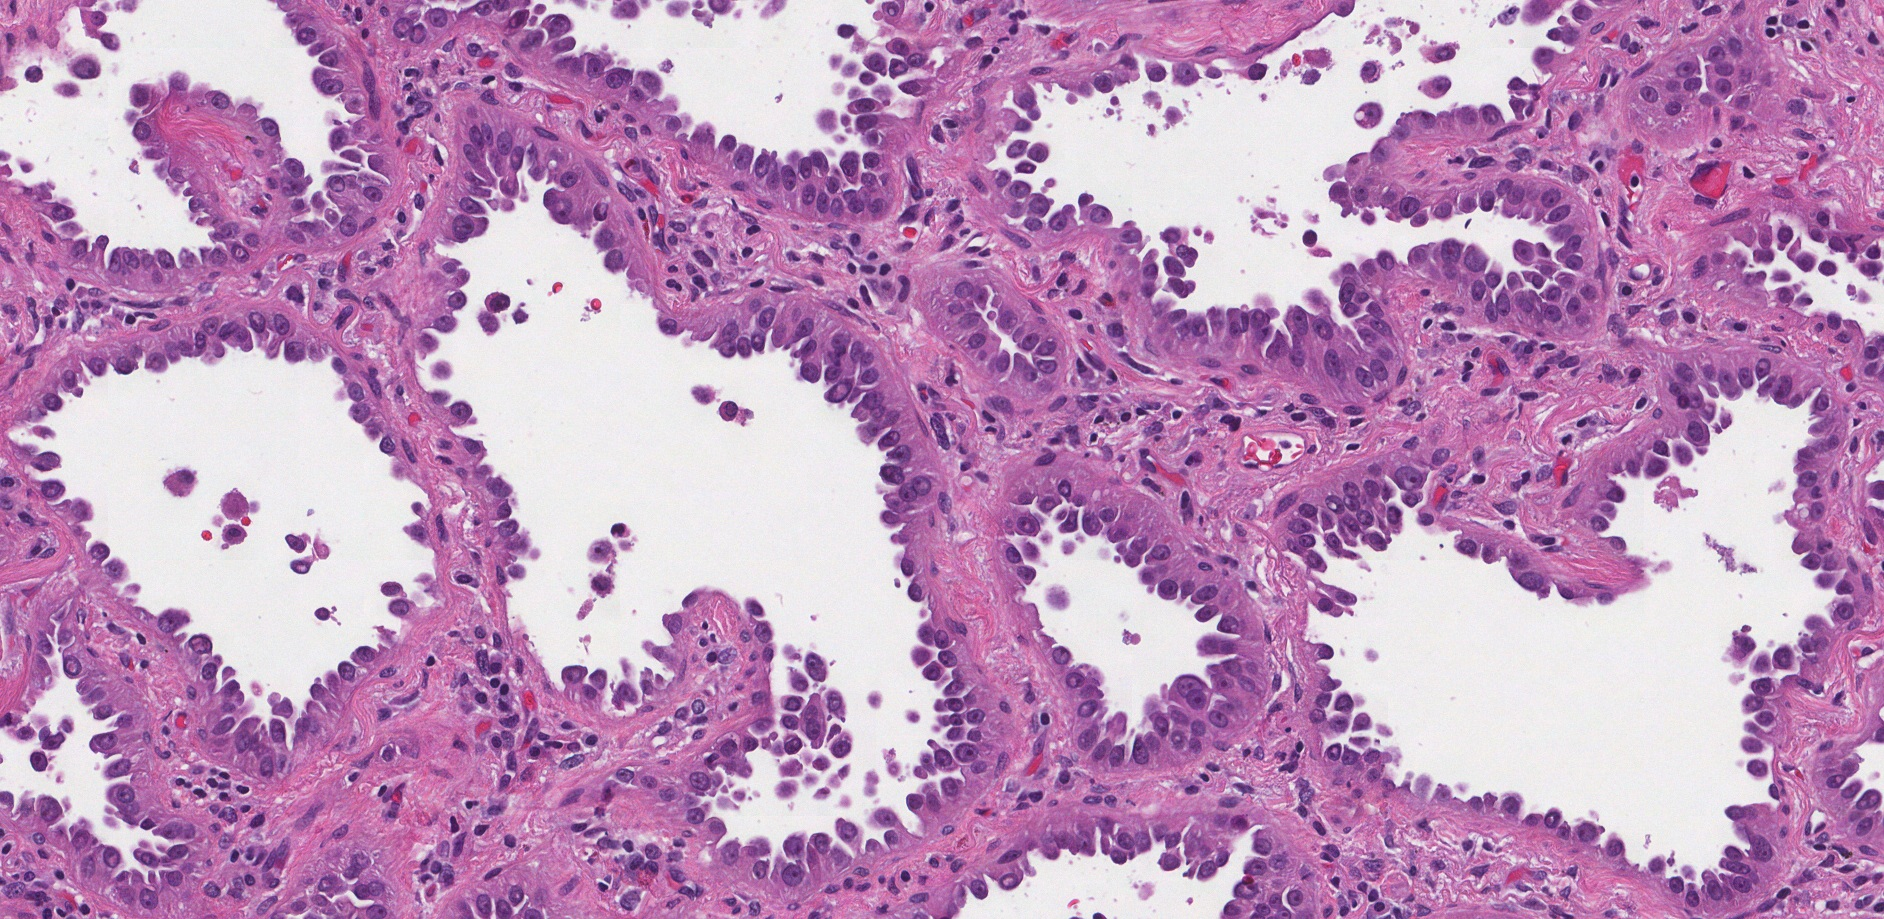 adenocarcinoma in situ lung